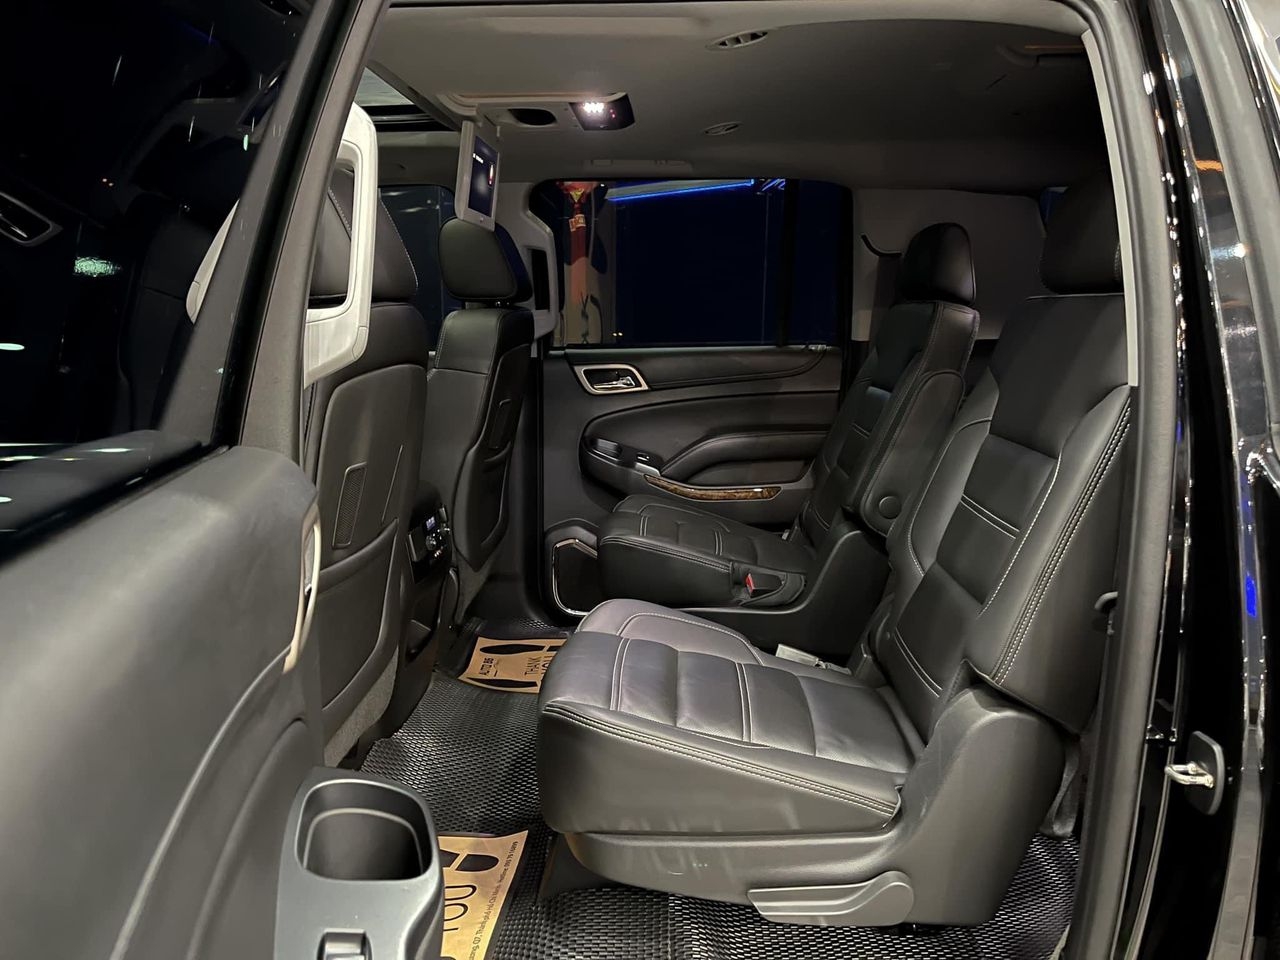 'Khủng Long' GMC Yunkon Denali XL 2015 lên sàn xe cũ với giá chỉ 3,6 tỷ đồng